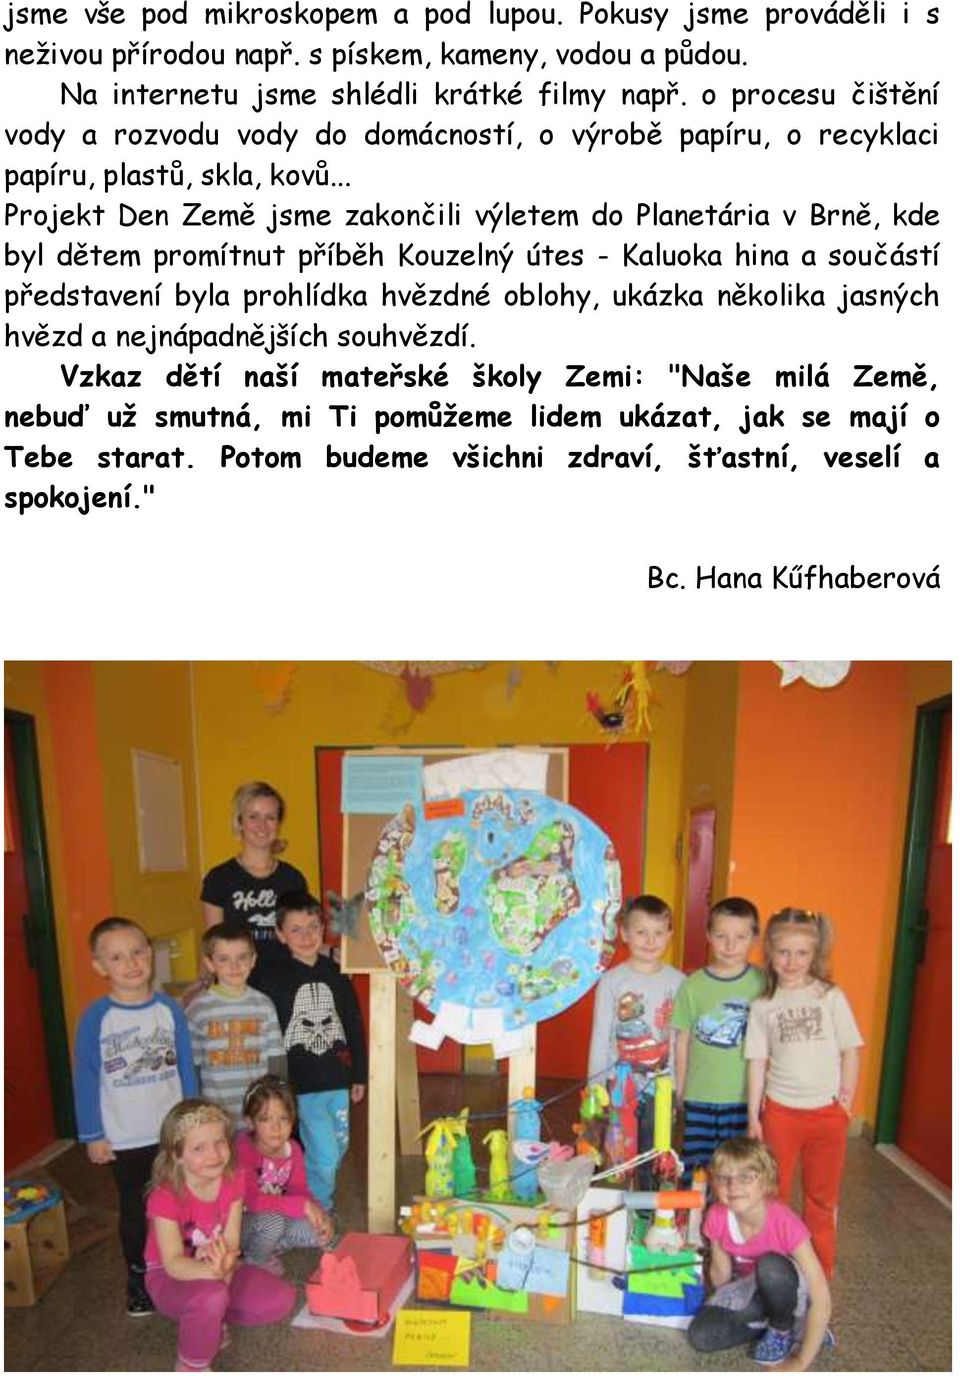 .. Projekt Den Země jsme zakončili výletem do Planetária v Brně, kde byl dětem promítnut příběh Kouzelný útes - Kaluoka hina a součástí představení byla prohlídka hvězdné oblohy,